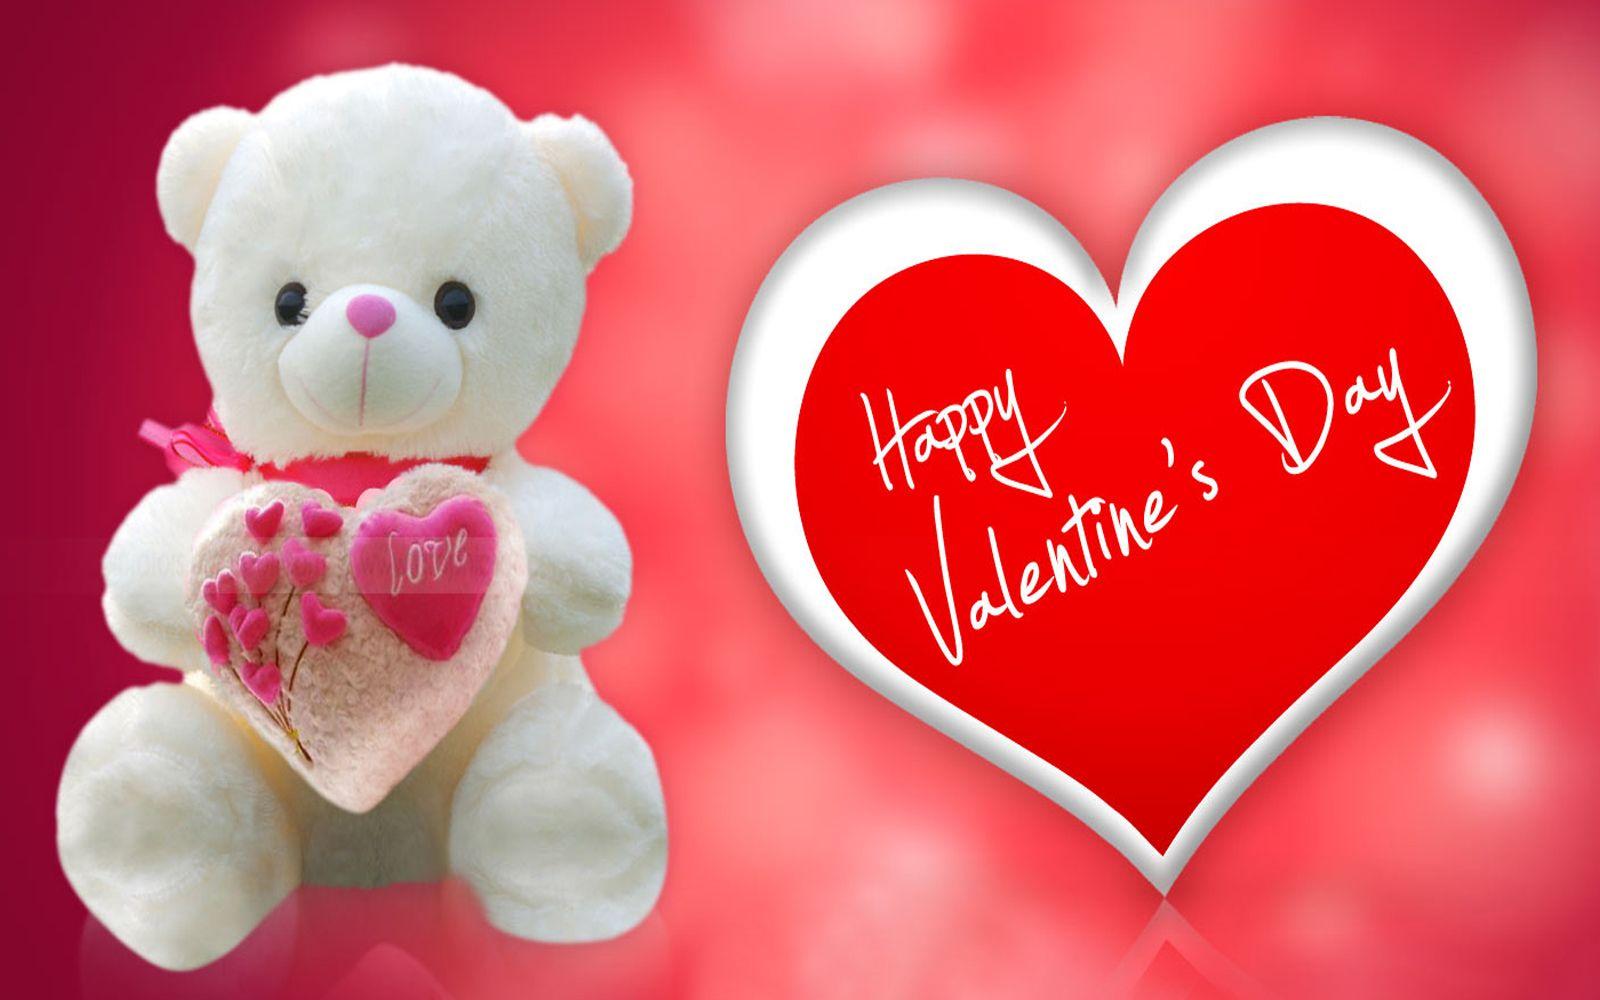 VALENTINES DAY WALLPAPER. Happy valentines day image, Valentines